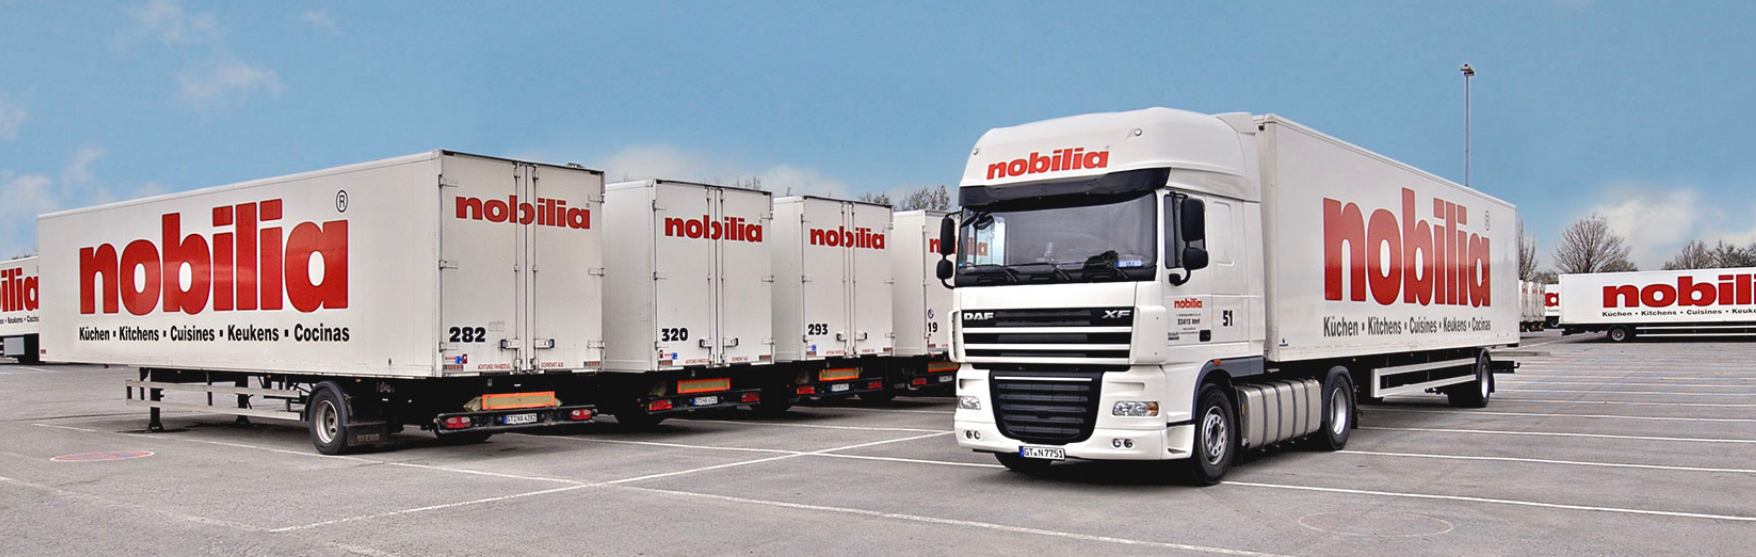 nobilia North America trucks